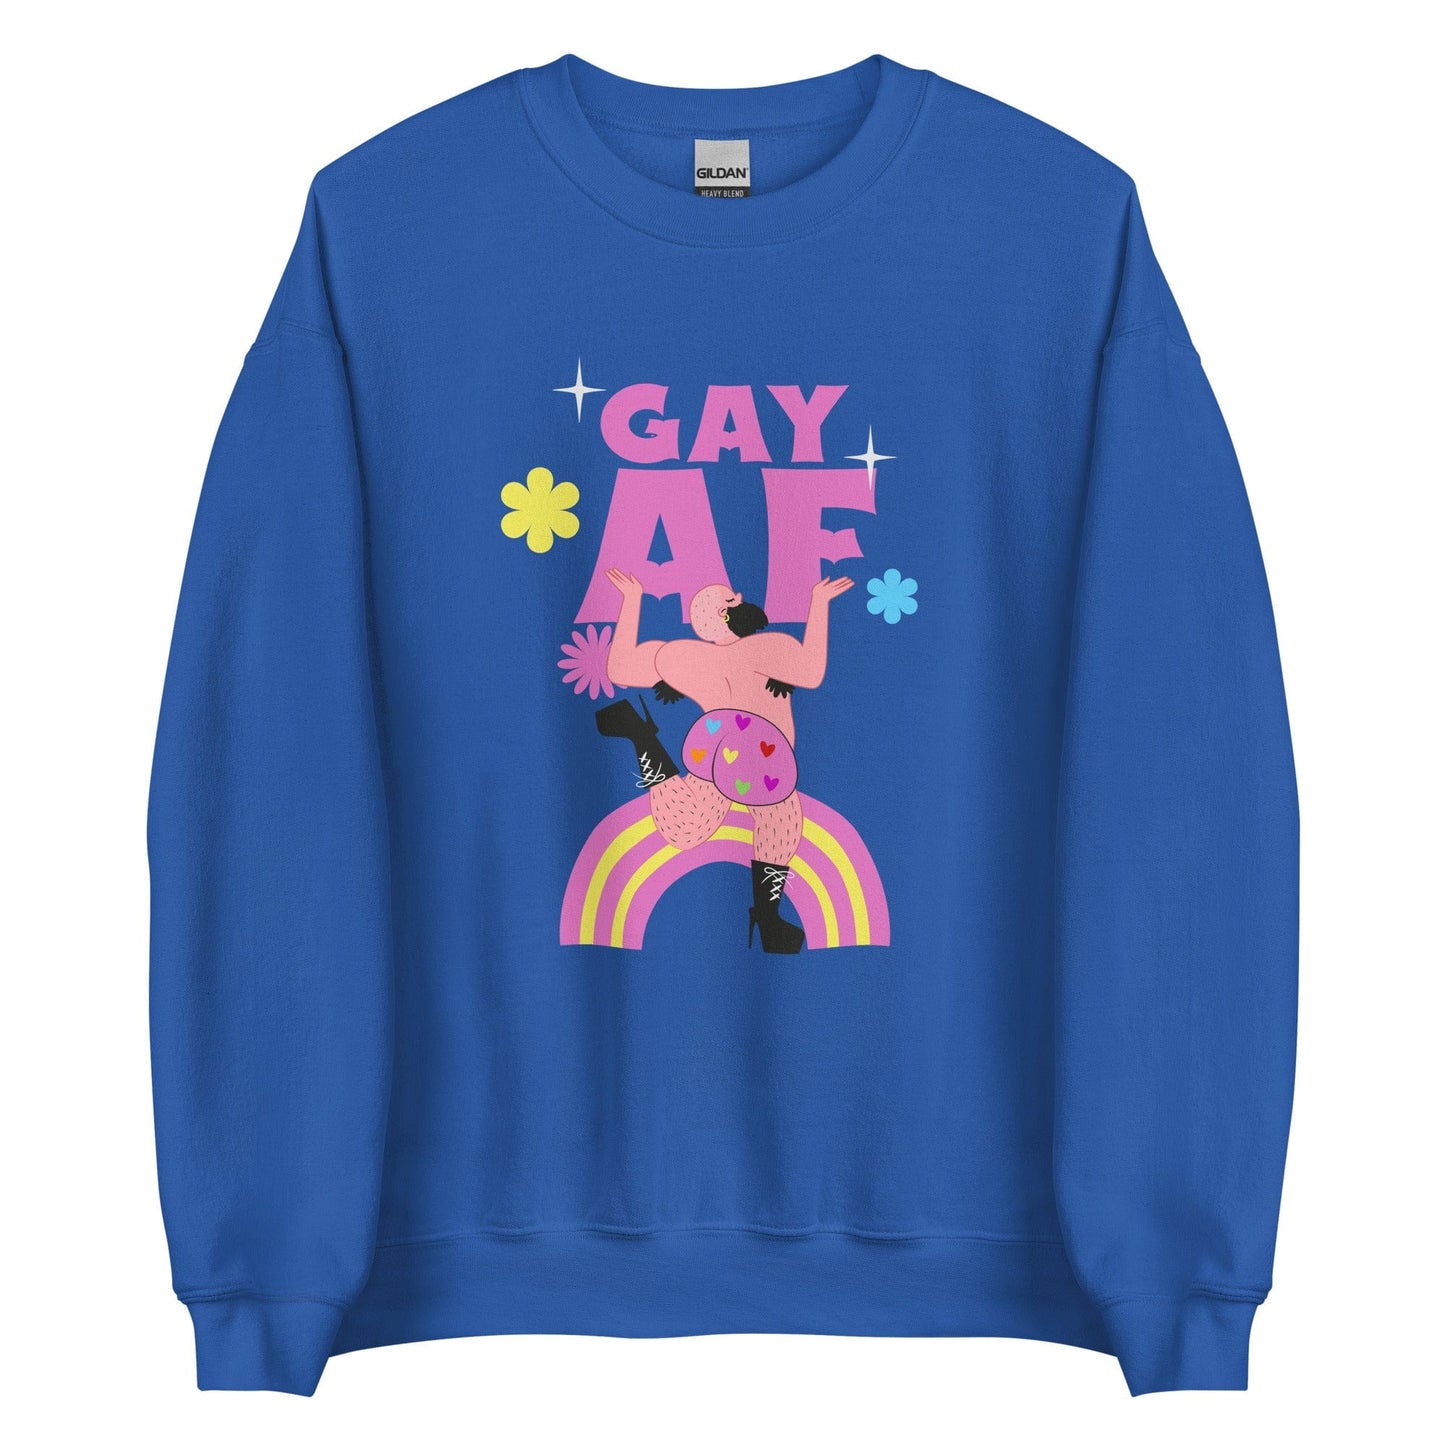 queer-gay-af-royal-sweatshirt-lgbtq-by-feminist-define